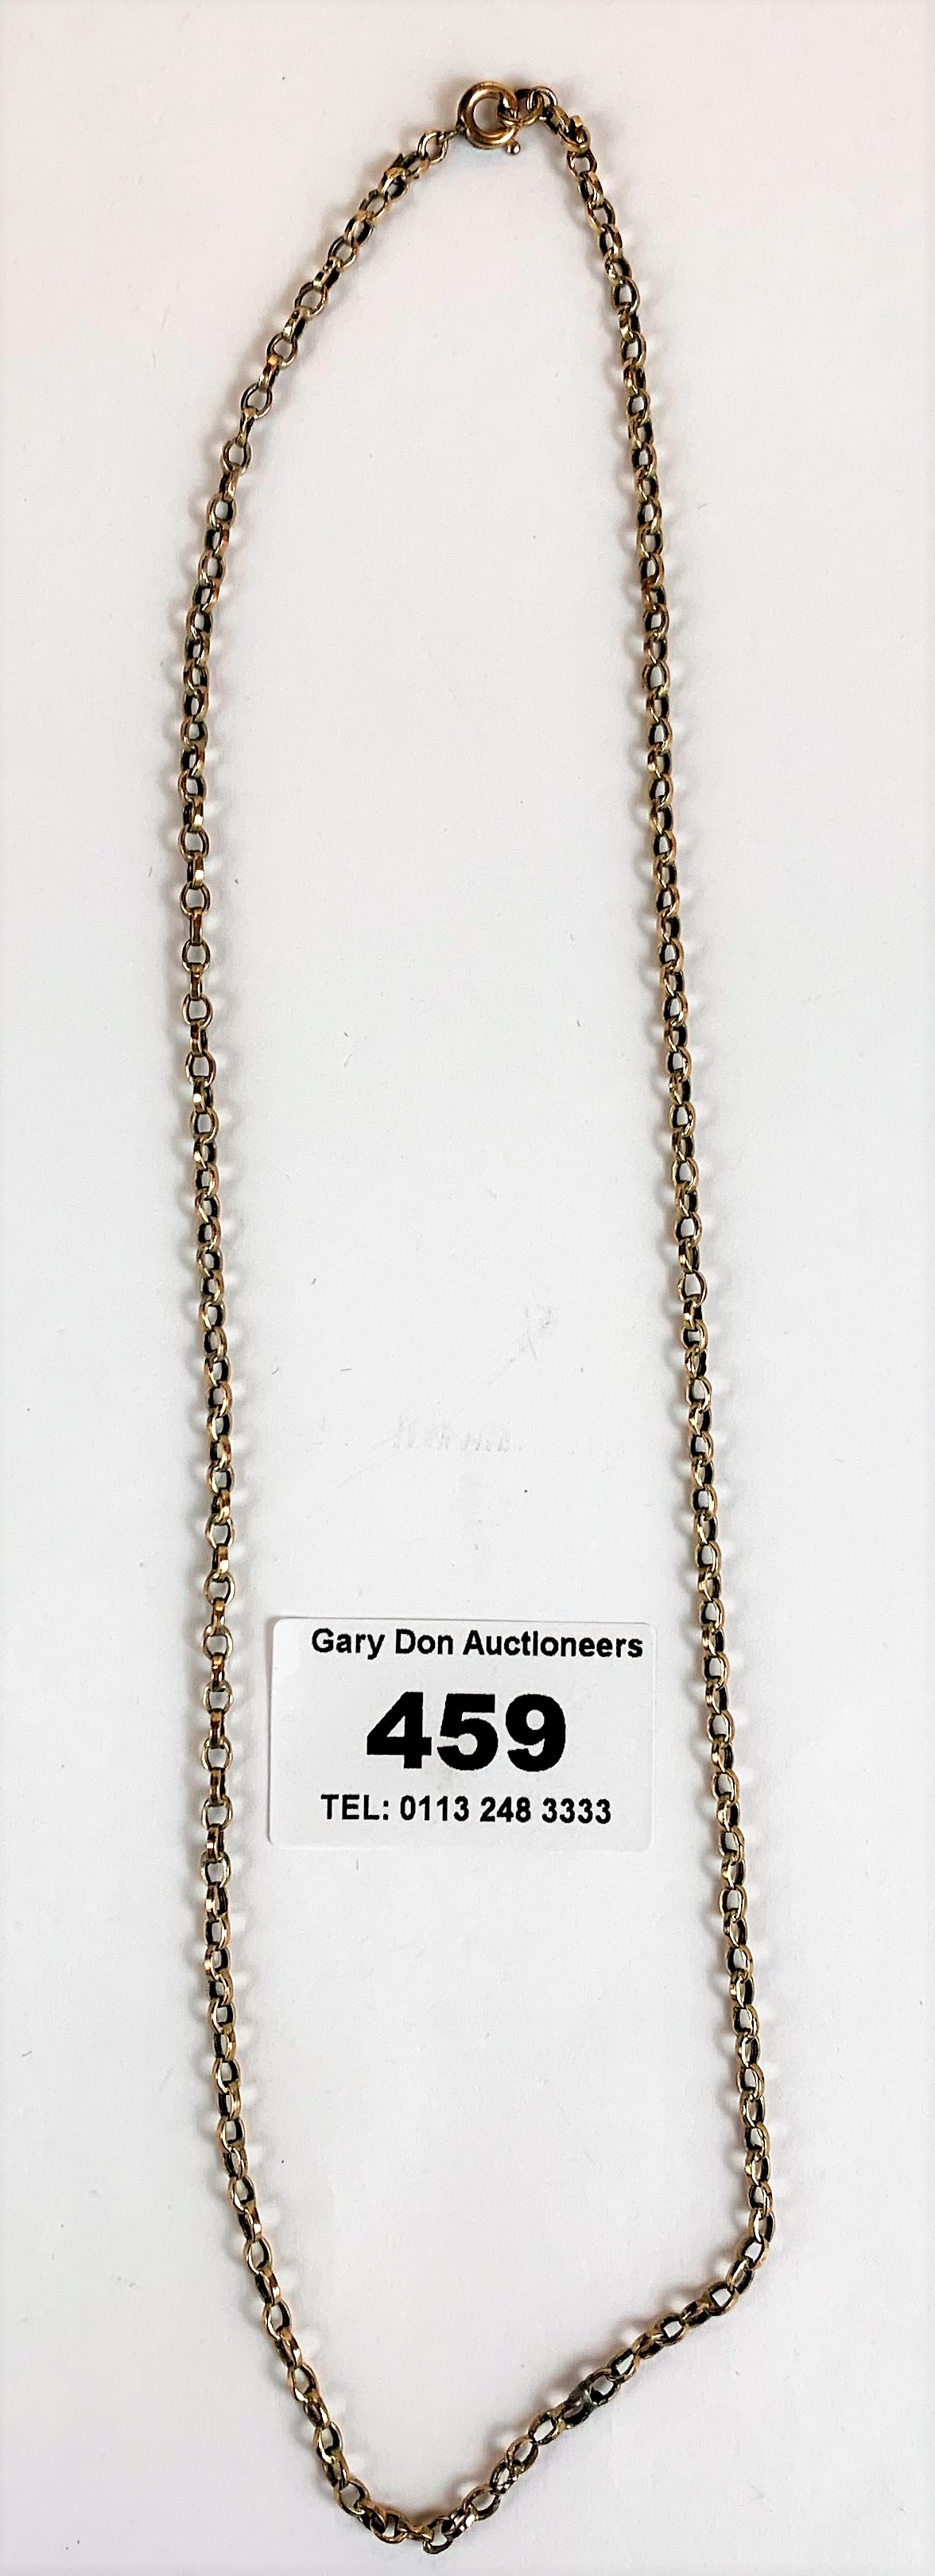 9k gold chain, w: 2.9 gms, 18” long